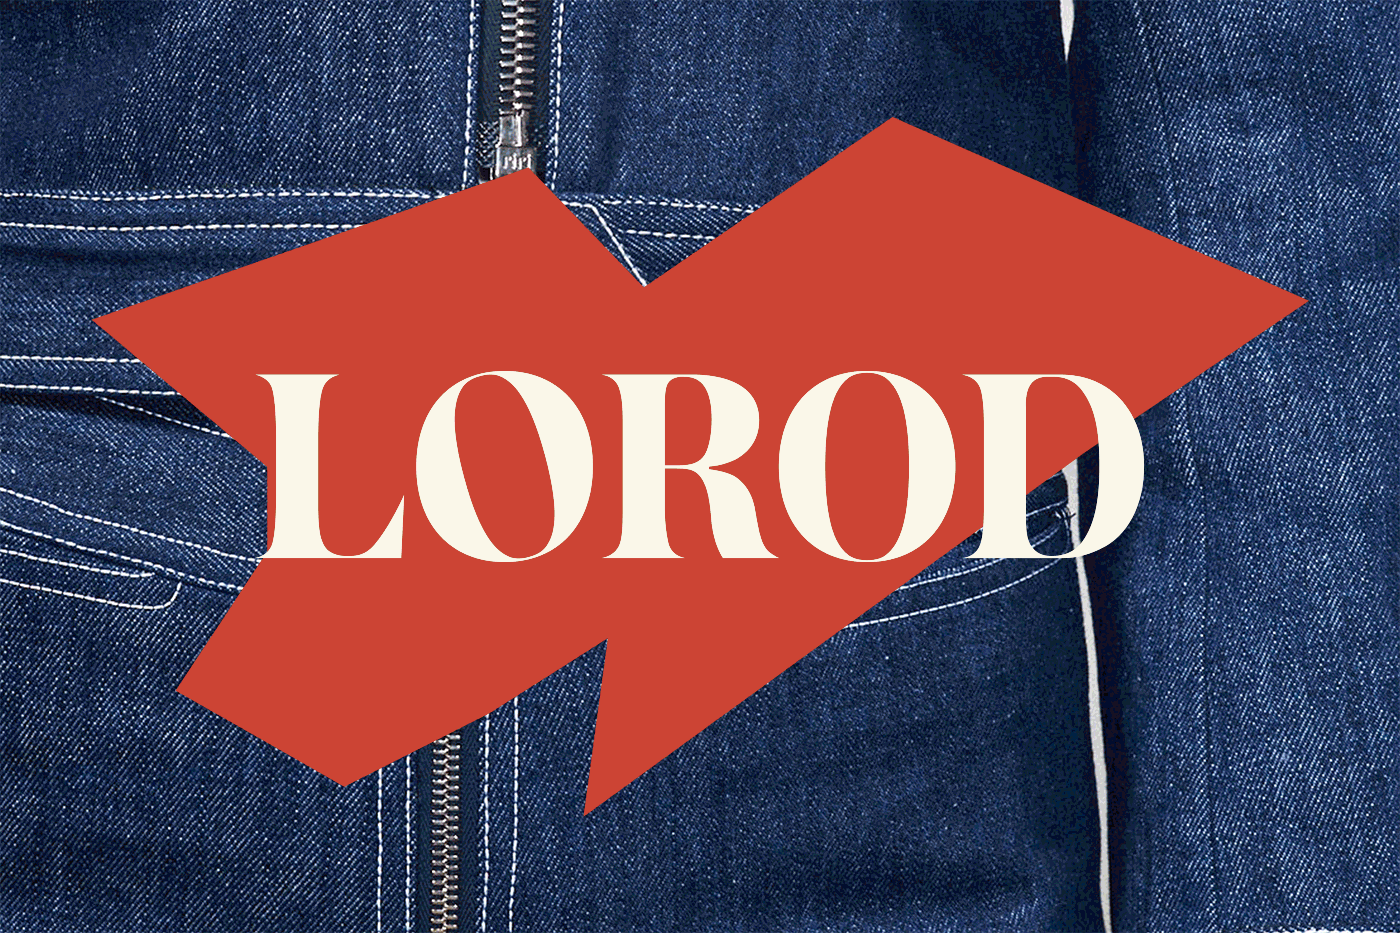 Lorod é uma marca onde o clássico encontra com o contemporâneo. Uma marca de moda criada pela dupla Lauren Rodriguez e Michael Freels que quer redefinir a forma com a qual nos vestimos através de construções modulares, tecidos distintos e um forma chique de se vestir inspirada pelo passado.